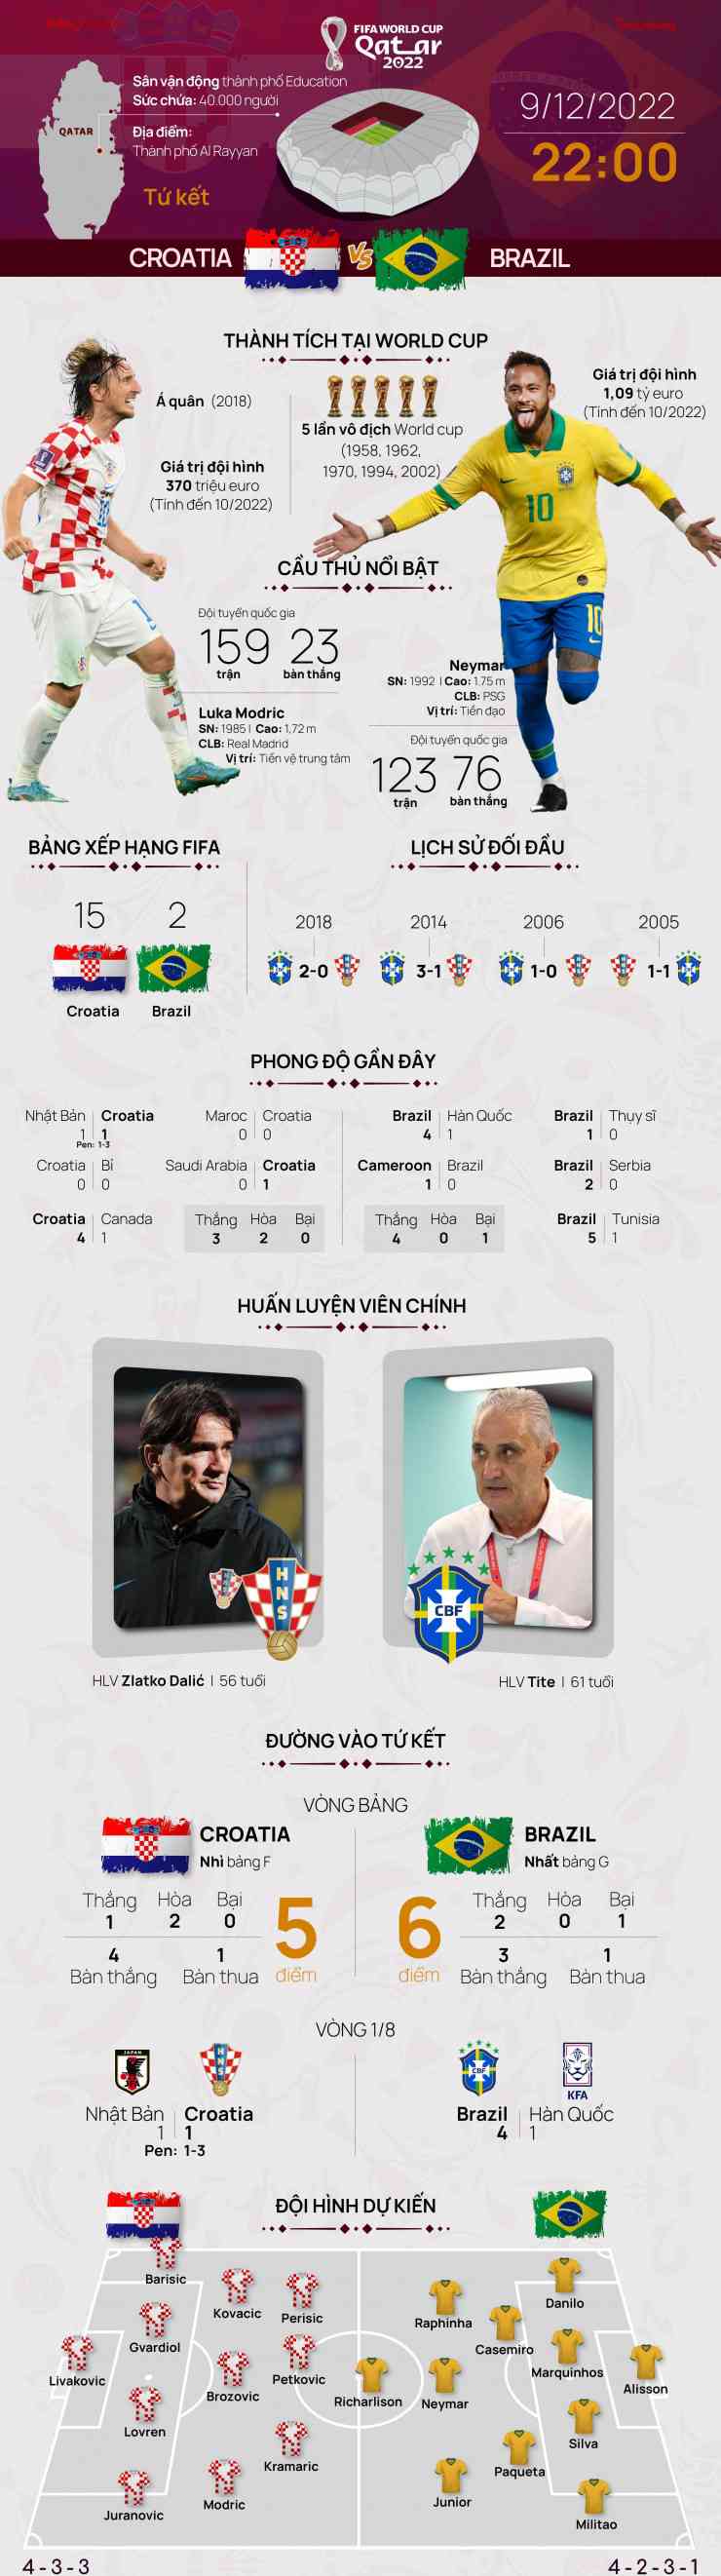 Tứ kết World Cup 2022: Tương quan trước trận Croatia - Brazil, 22 giờ 9/12 - 1